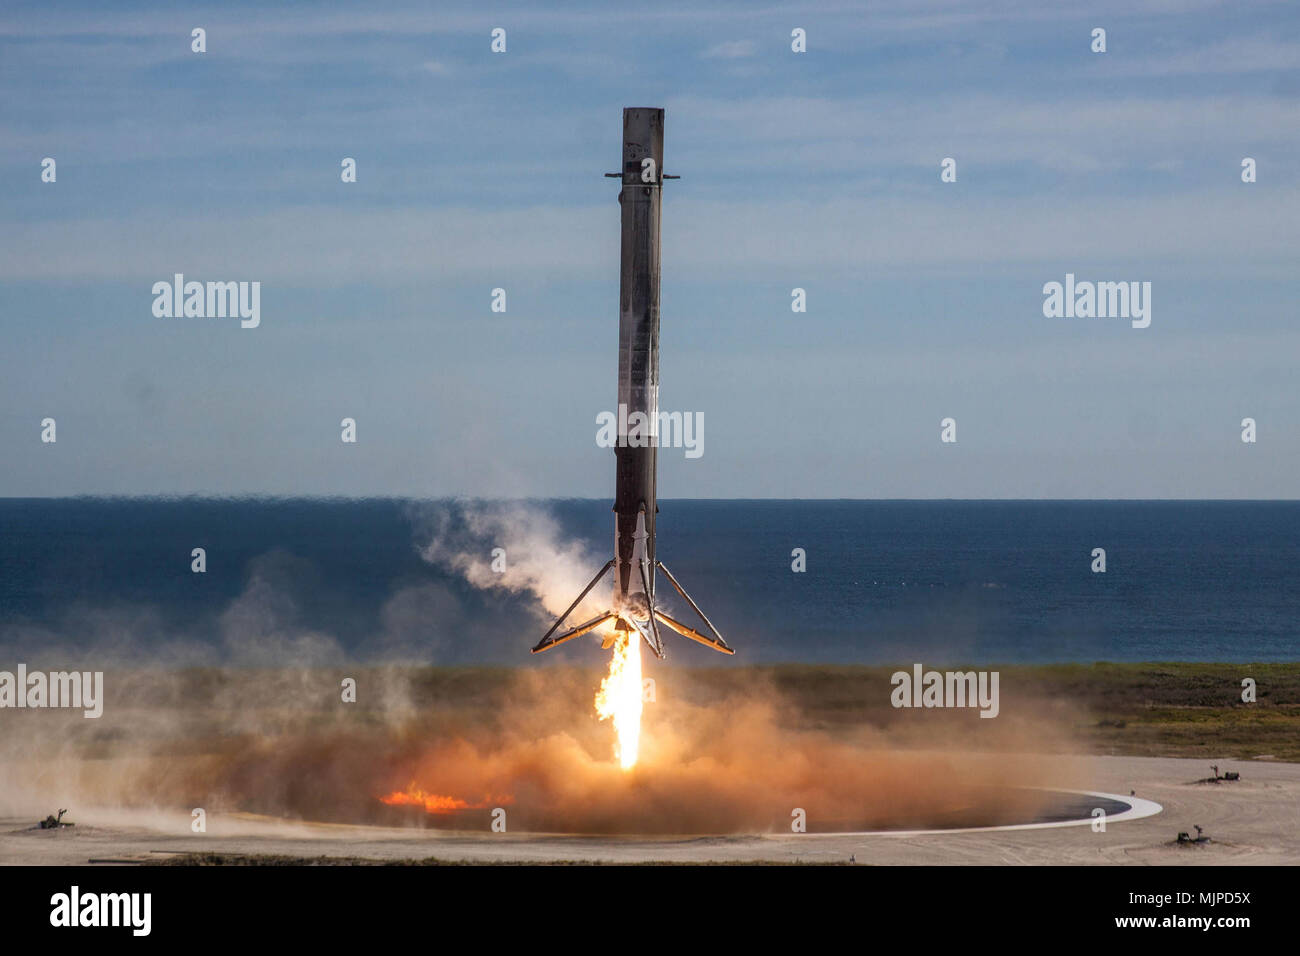 Un SpaceX "volo provato" primo stadio survoltore terre con successo sulla zona di atterraggio 1, Cape Canaveral Air Force Station, Fla. dic. 15, 2017. Gli Stati Uniti Air Force's 45th spazio ala SpaceX supportato il successo del lancio della NASA commerciale della missione di rifornimento 13 a bordo di un Falcon 9 razzo da complessi di lancio 40 15 dicembre 2017. Subito dopo il lancio, il booster restituito in modo sicuro come ha fatto per la sua prima missione, CRS-11, nel giugno 2017. (Foto di cortesia/SpaceX) Foto Stock